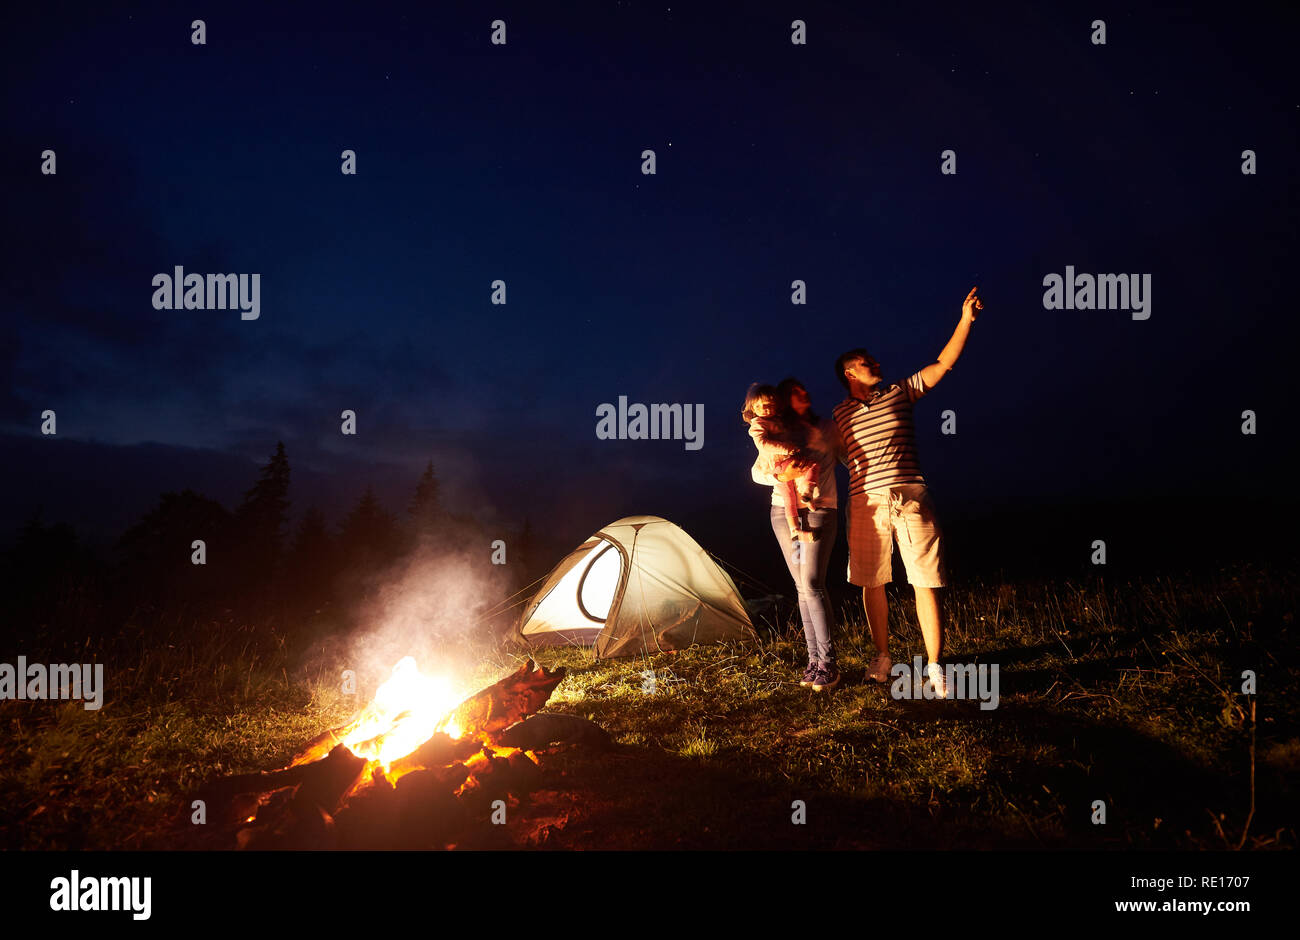 Camping familial dans les montagnes de nuit. Femme tenant des armes petite fille, homme pointant à bright stars dans ciel sombre en face de la tente et le brûlage de camp. Tourisme et de la beauté de la nature concept. Banque D'Images